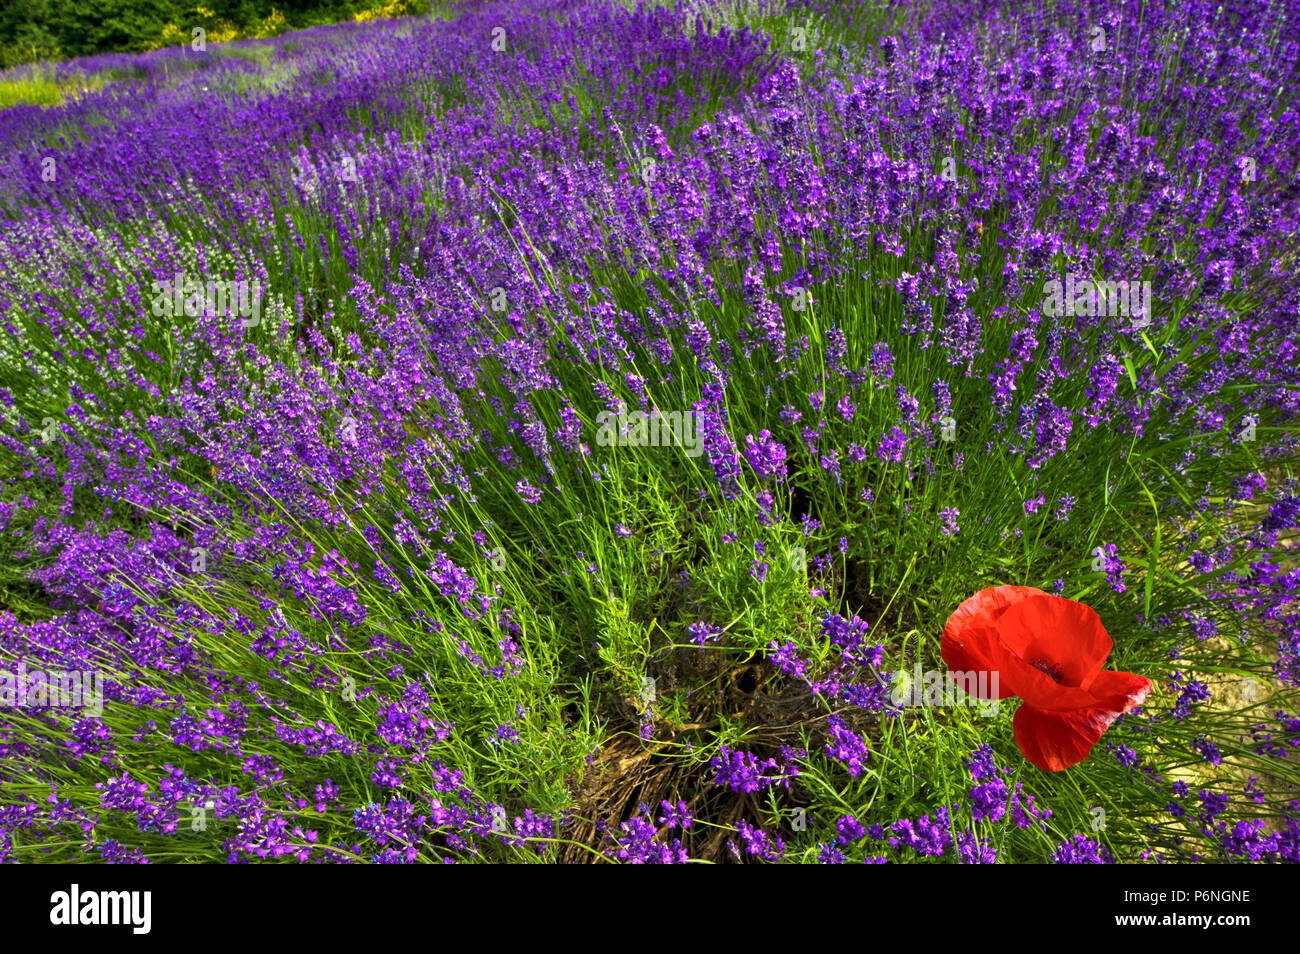 Papavero rosso in un campo di lavanda in fiore, nei pressi del villaggio di Sale San Giovanni nelle Langhe in provincia di Cuneo, Piemonte, Italia del Nord, dell'Europa. Foto Stock